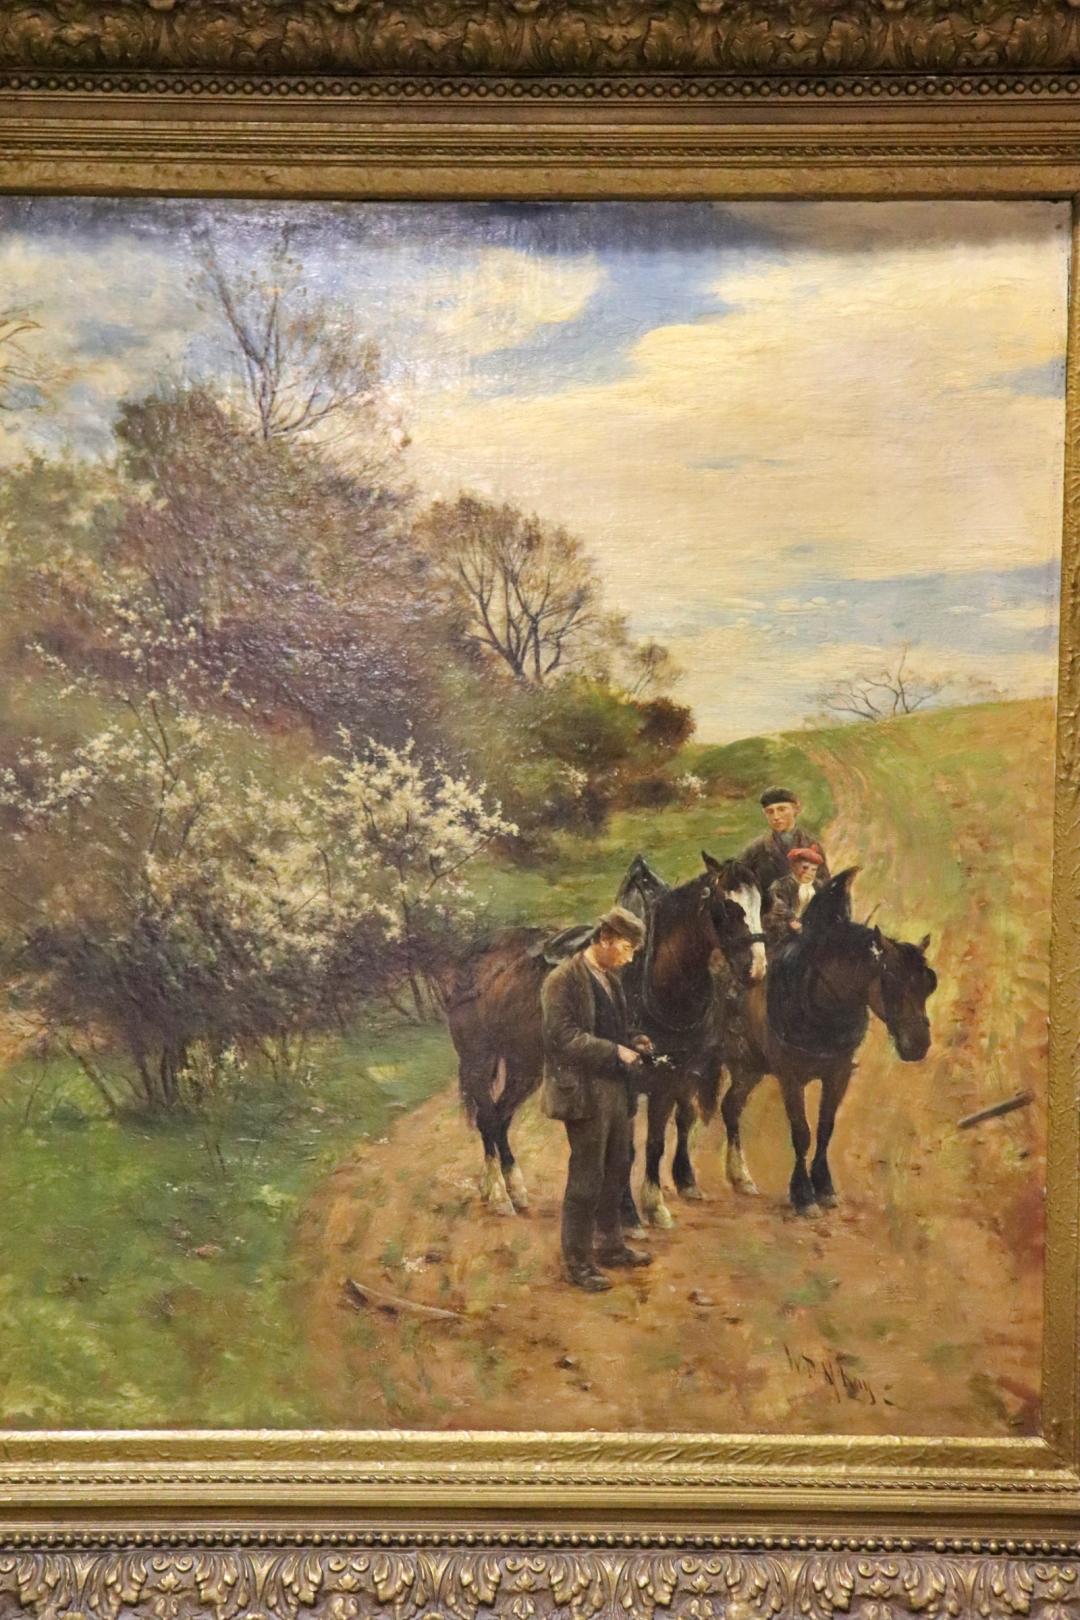 Figuren auf einer Landstraße mit Pferden. Künstler William Darling McKay (1844 - 1924). Der schottische Künstler studierte in Holland und wurde von der Haager Schule beeinflusst. Er ist bekannt für schottische Landschaften und Darstellungen des